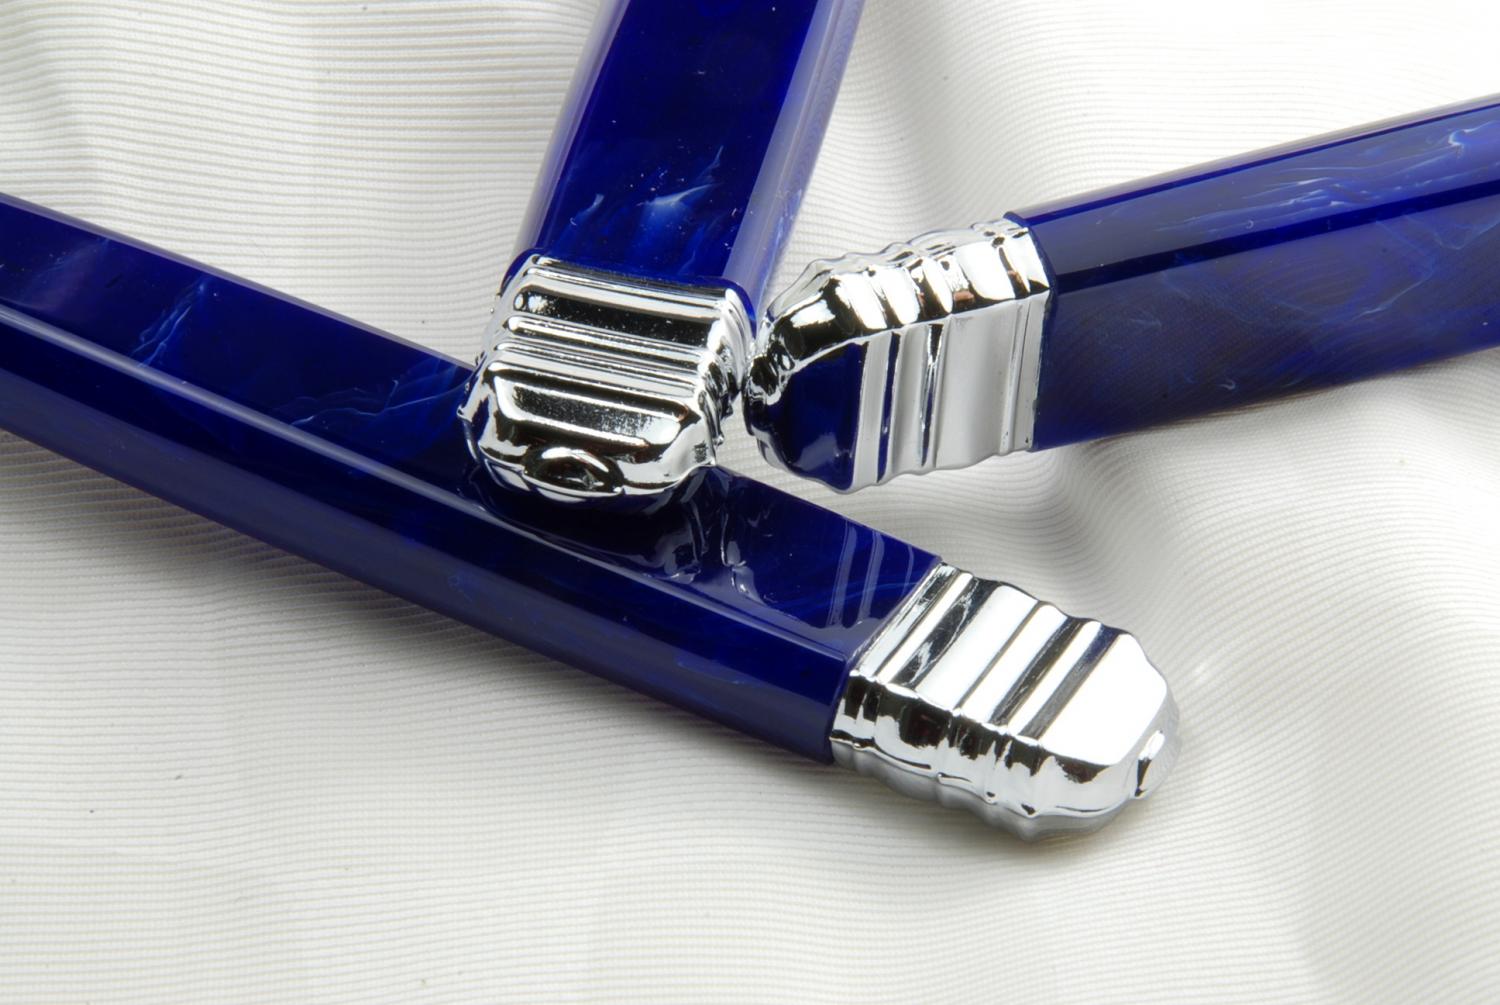 MODELE EMPIRE
manche plexi couleur lapis lazuli 
garniture chroméé